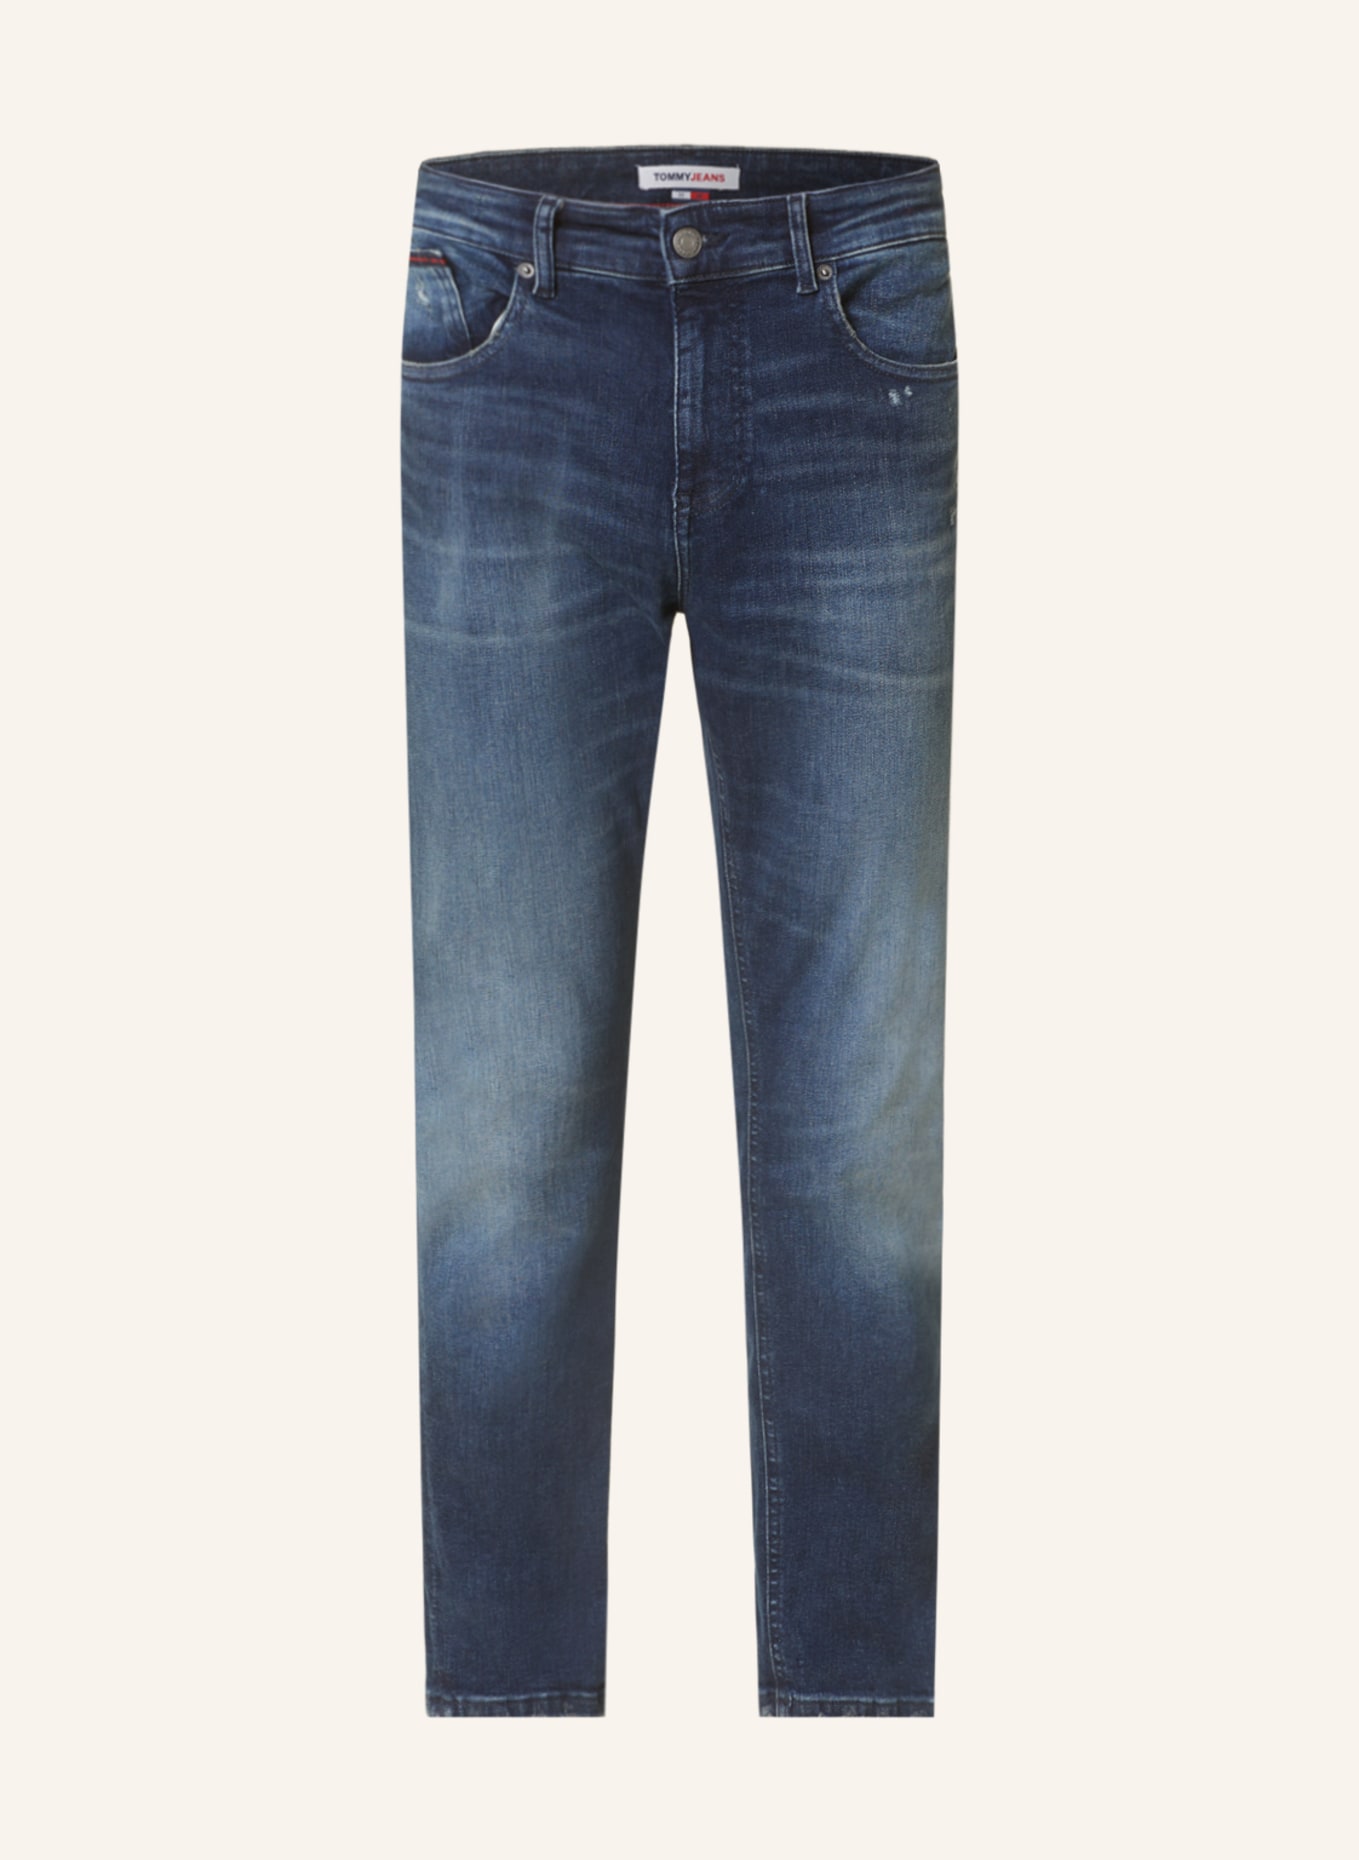 TOMMY JEANS Jeans AUSTIN slim tapered fit, Color: 1BK Denim Dark (Image 1)